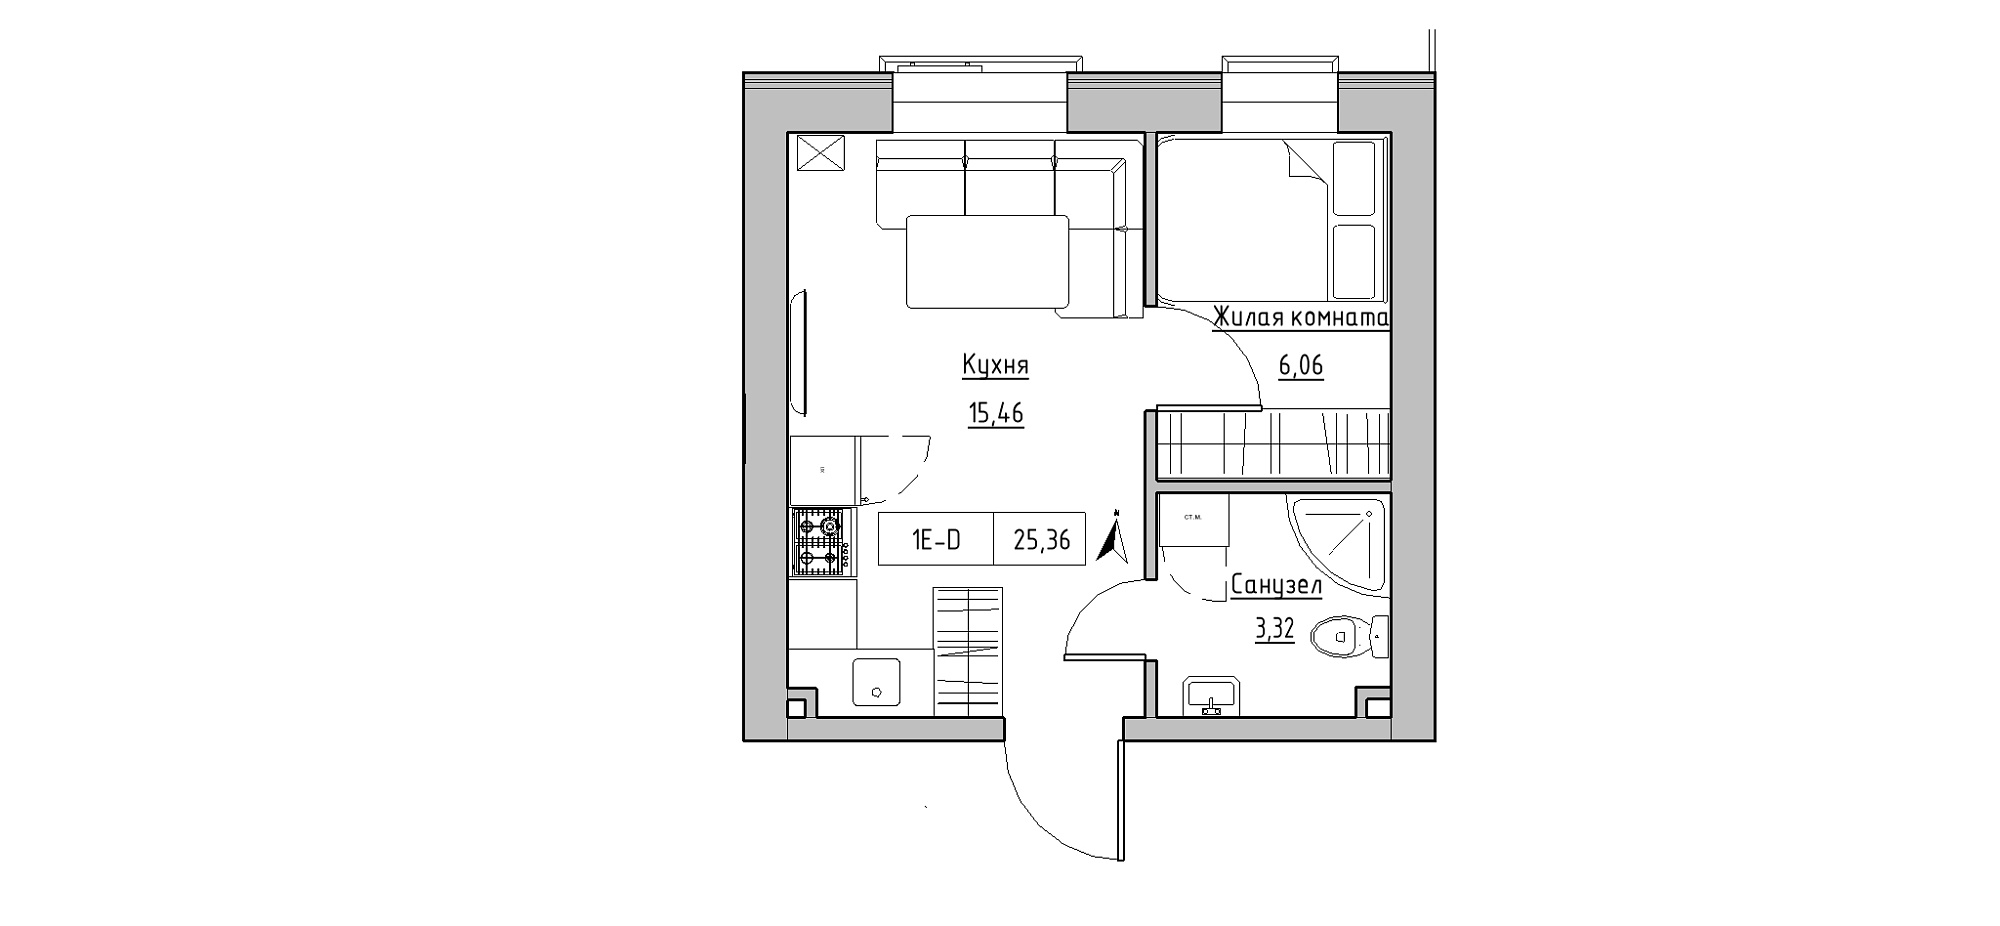 Планування 1-к квартира площею 25.36м2, KS-020-05/0002.